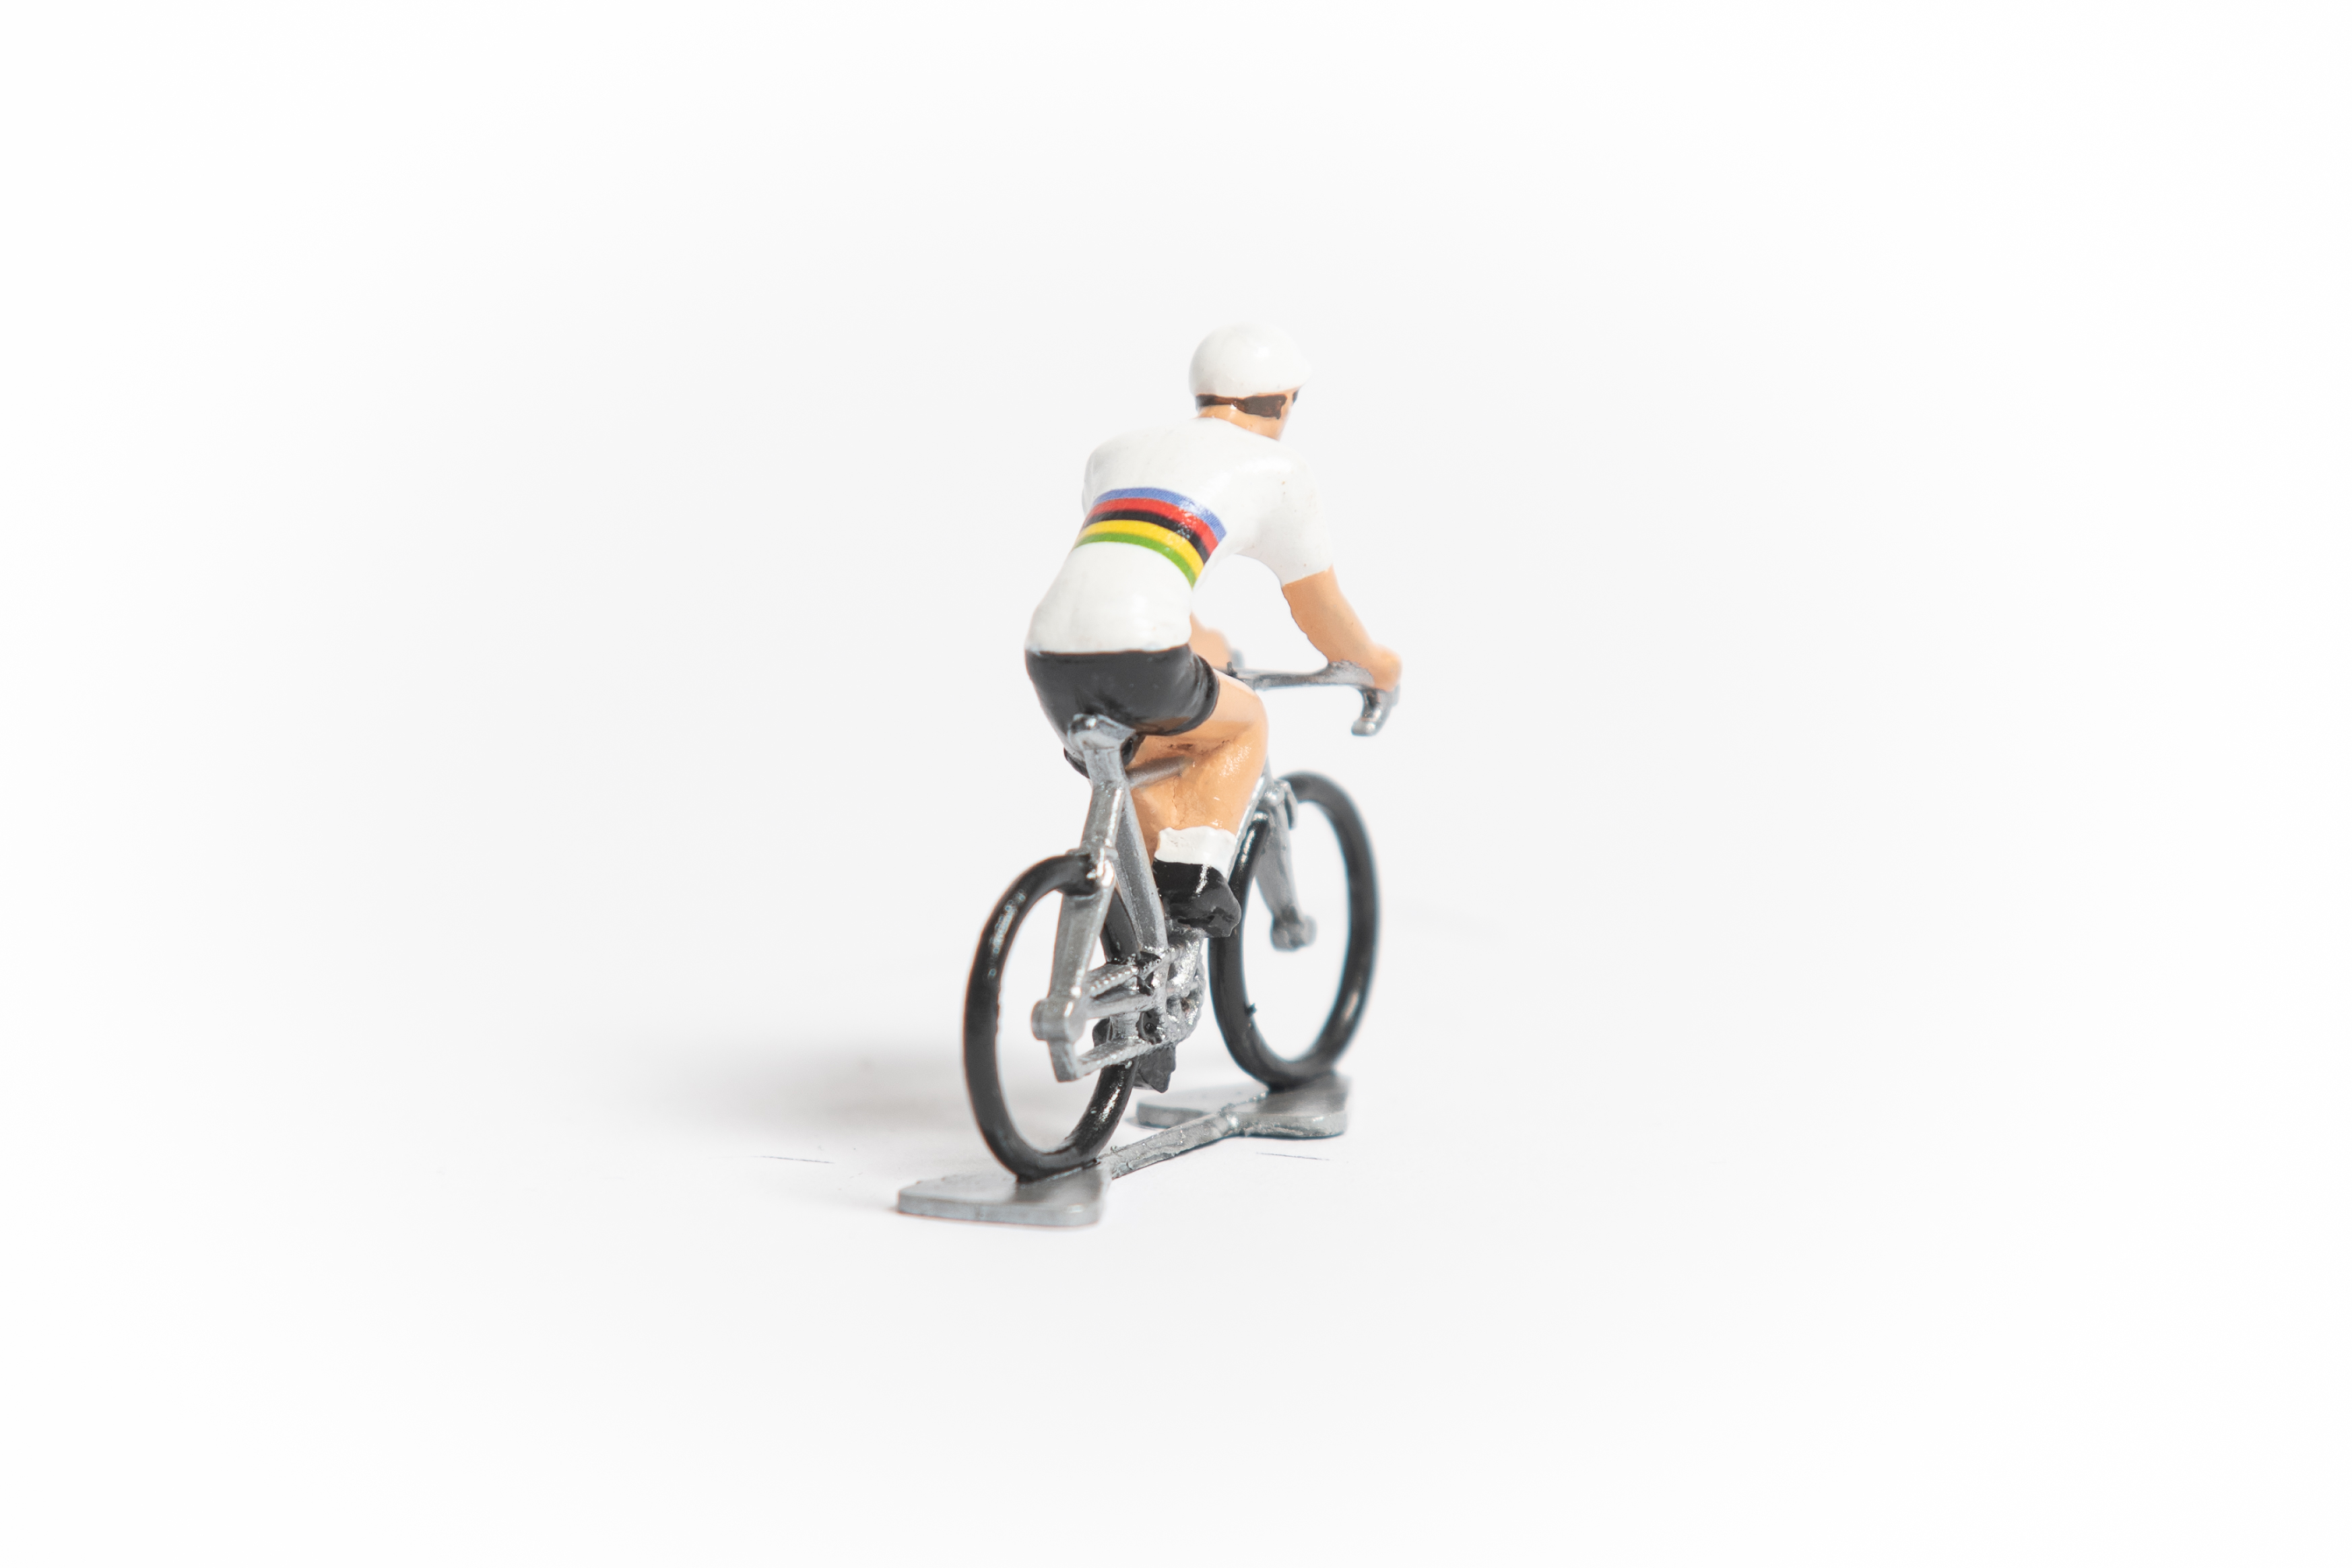 Sky 2018-small-cycling cyclist figurine figure 